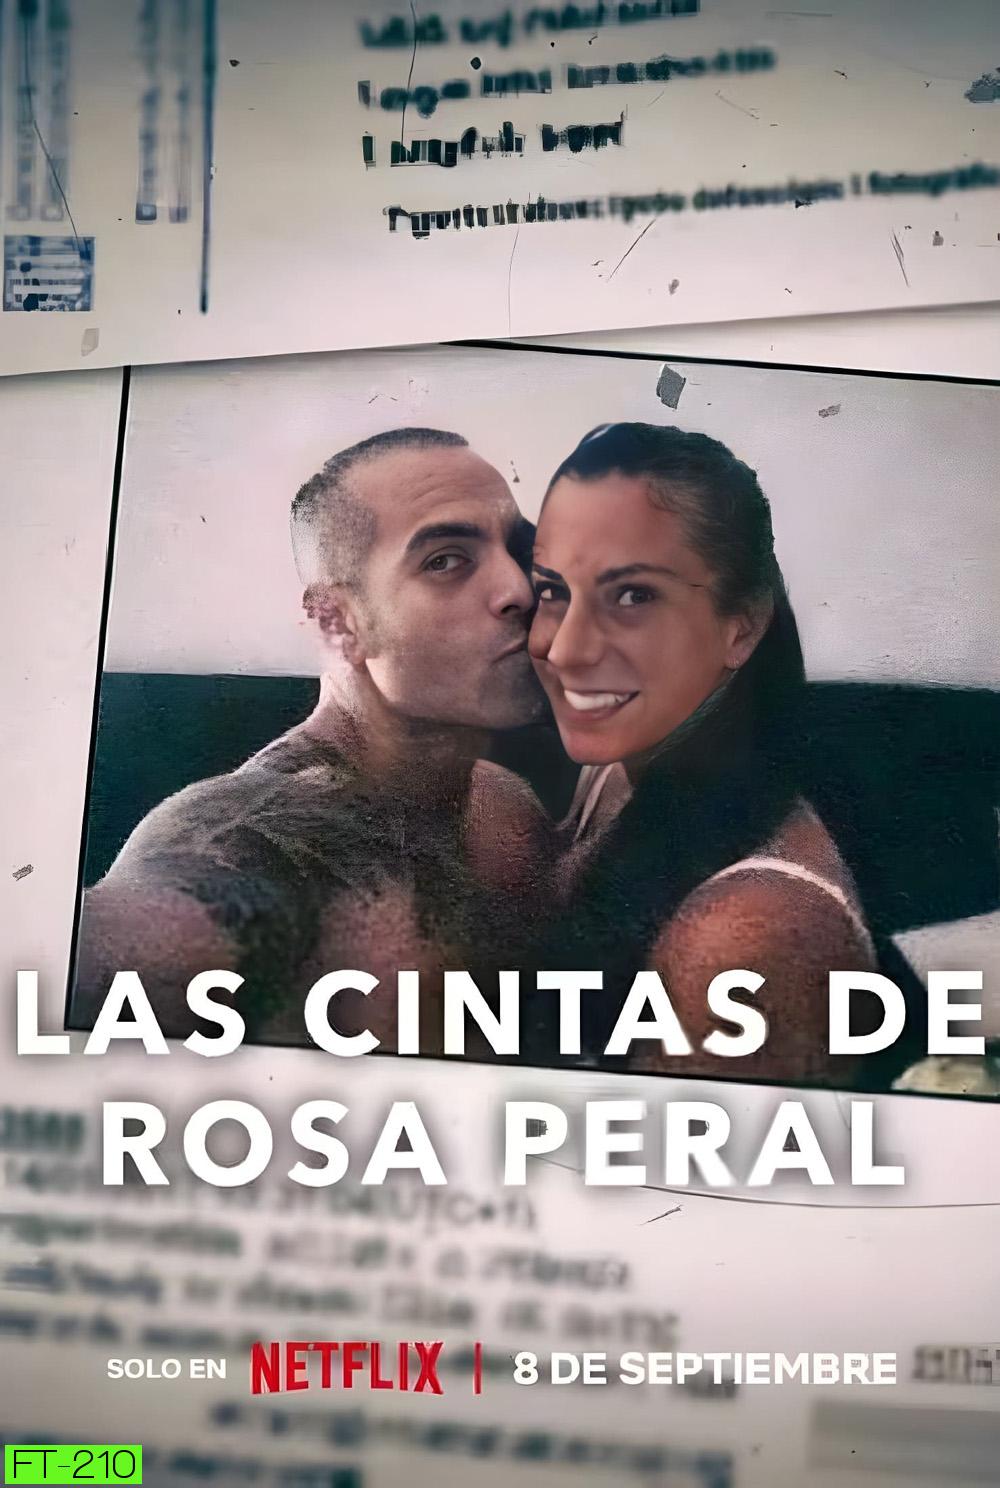 Rosa Perals Tapes (2023) เทปของโรซา เพรัล (ความยาม 1 ชั่วโมง 20 นาที )